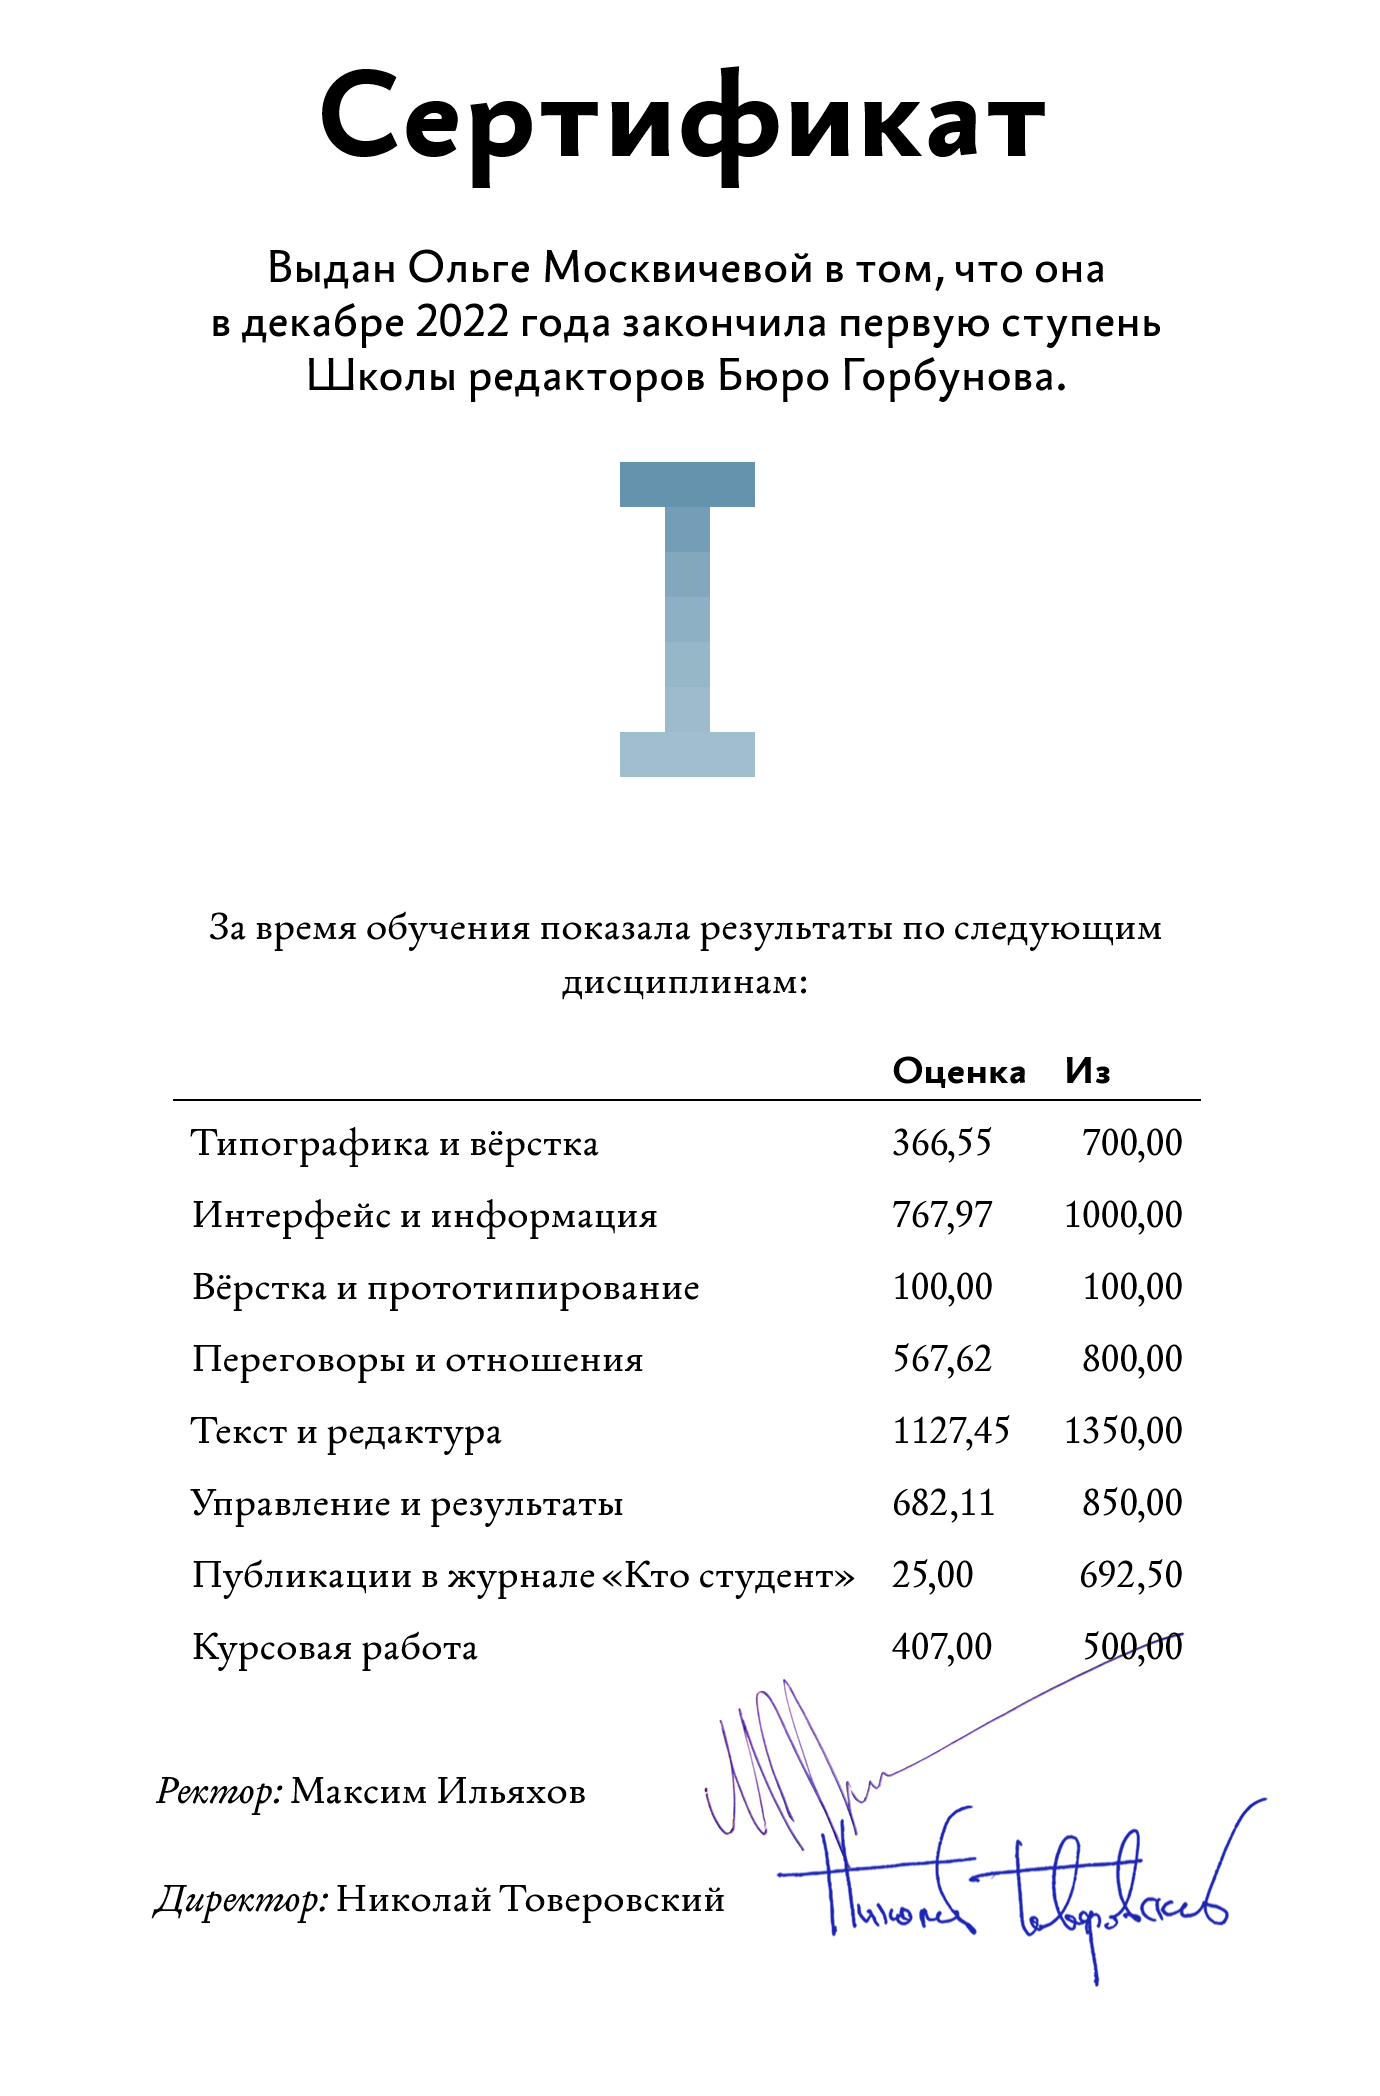 Мой сертификат об окончании обучения. Тесты по типографике давались мне особенно тяжело. Источник: bureau.ru